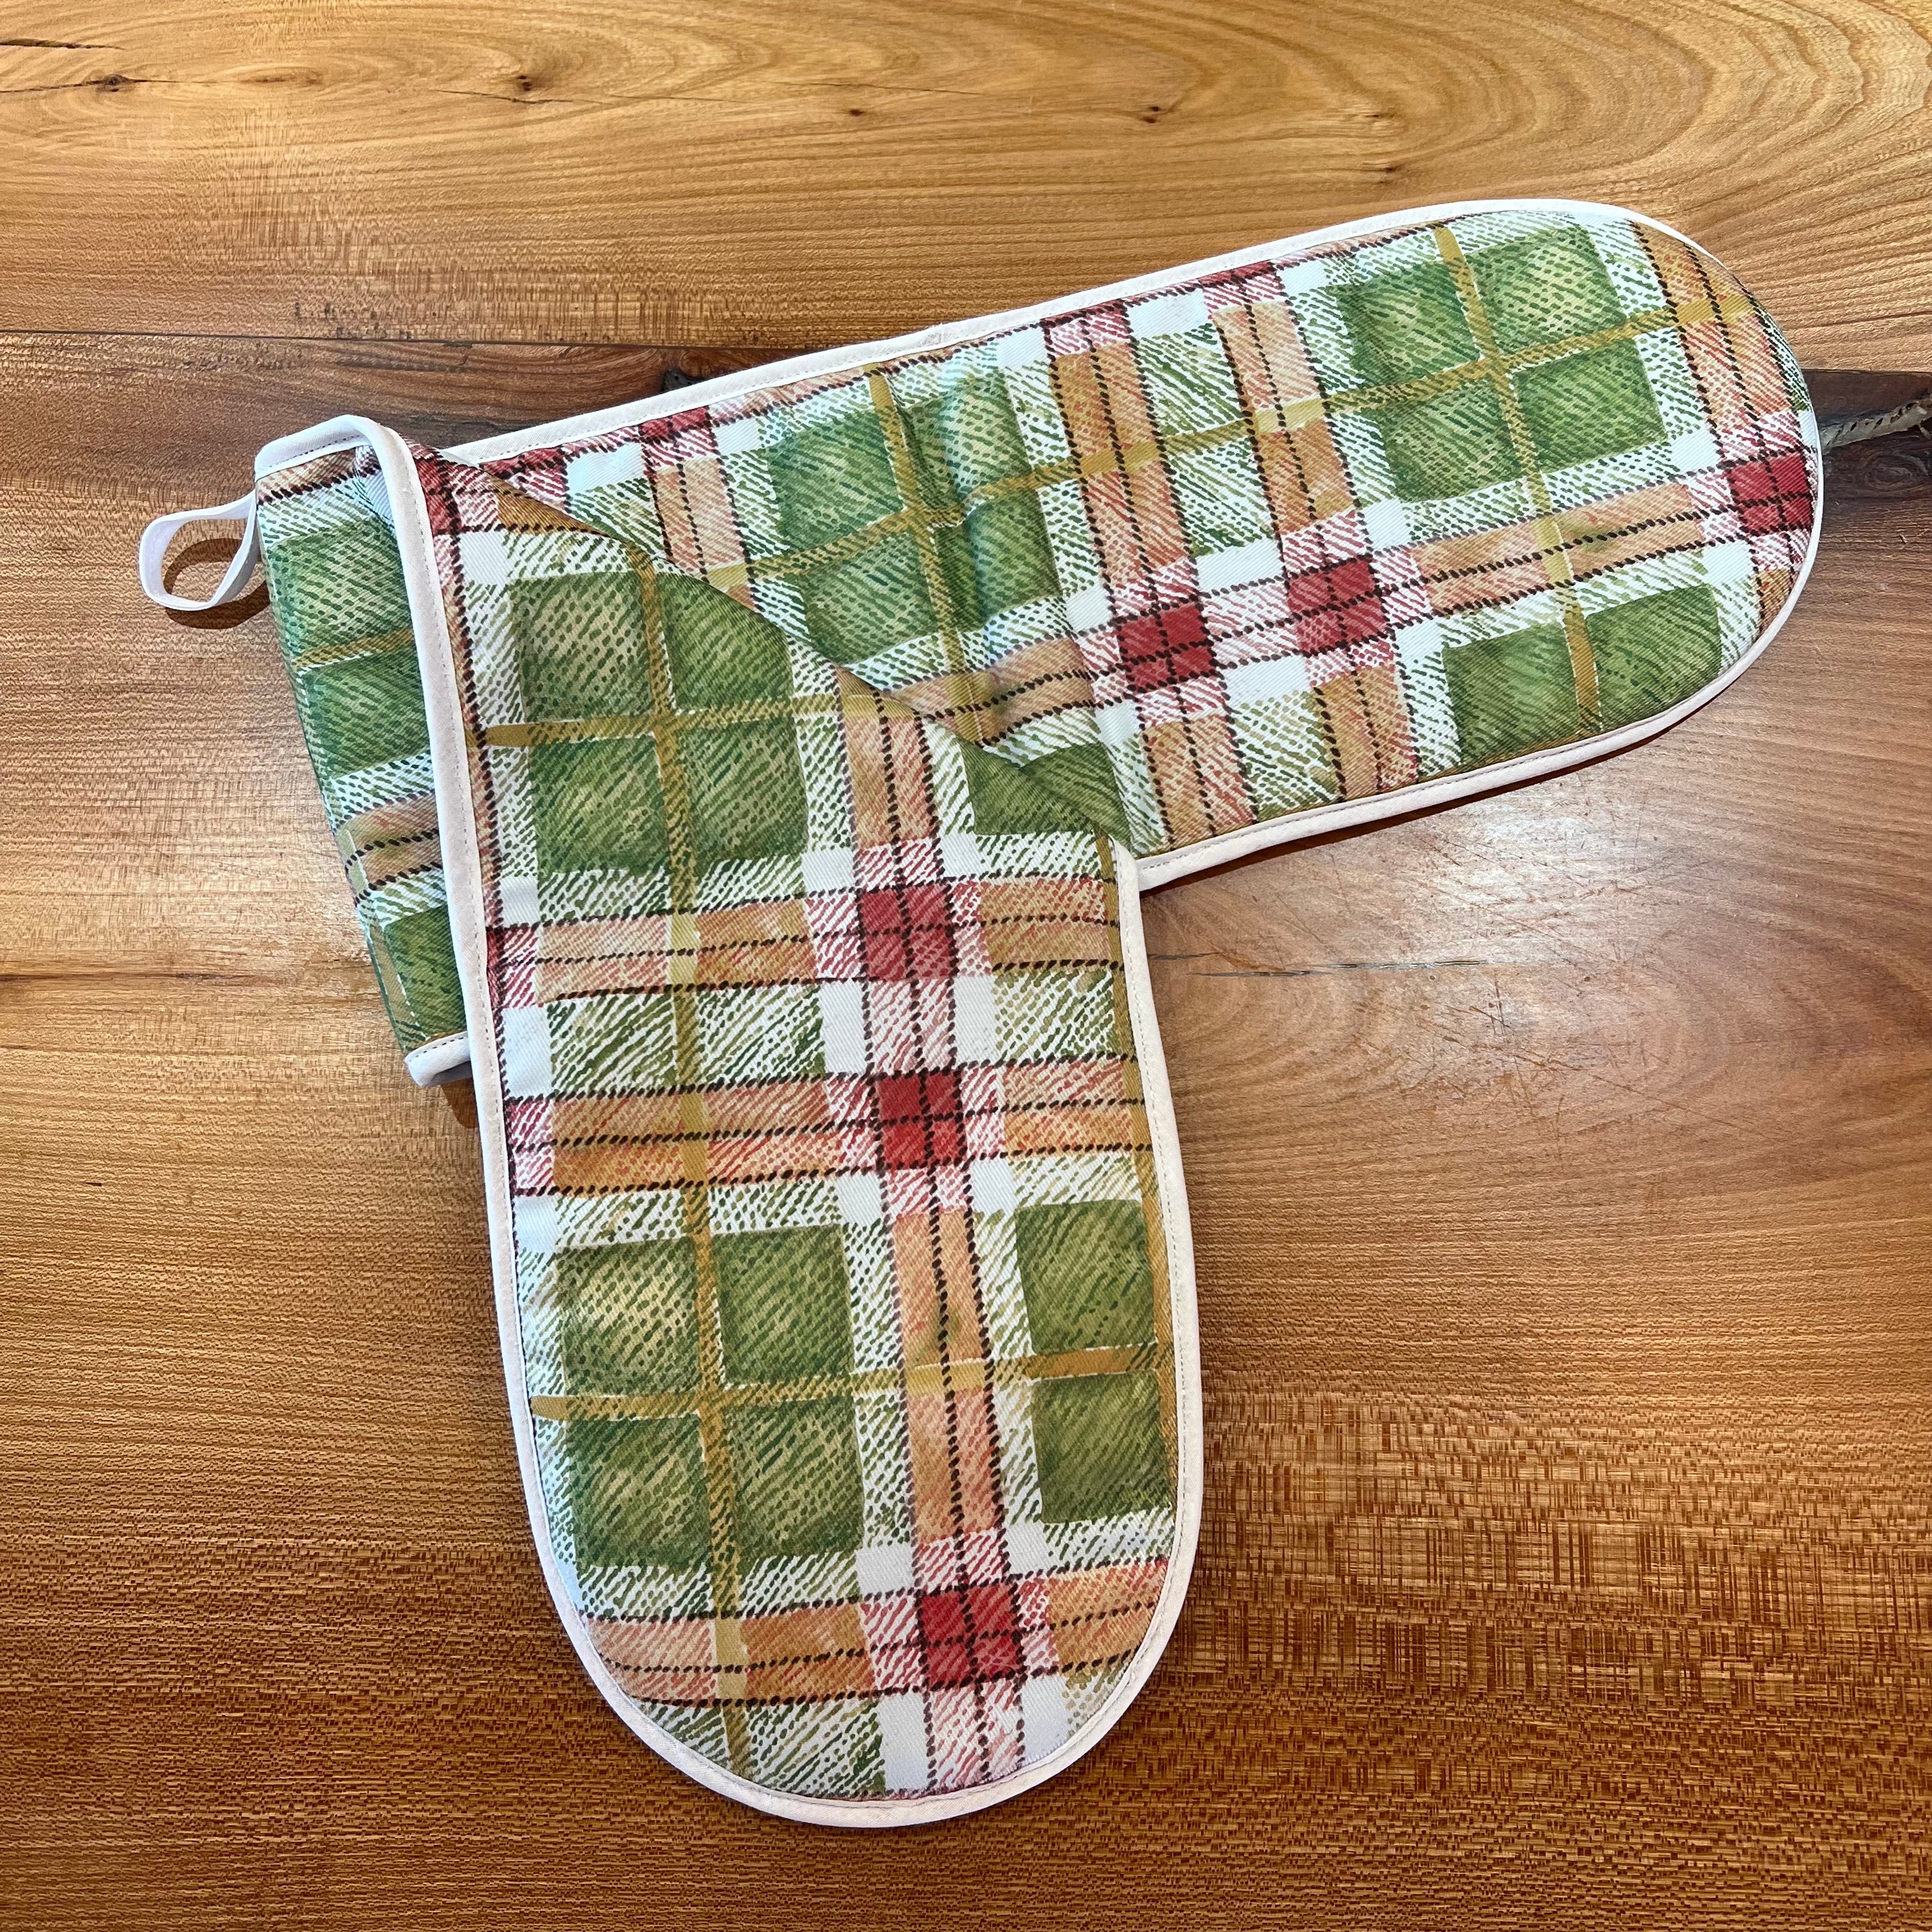 Knockando Tartan Oven Gloves